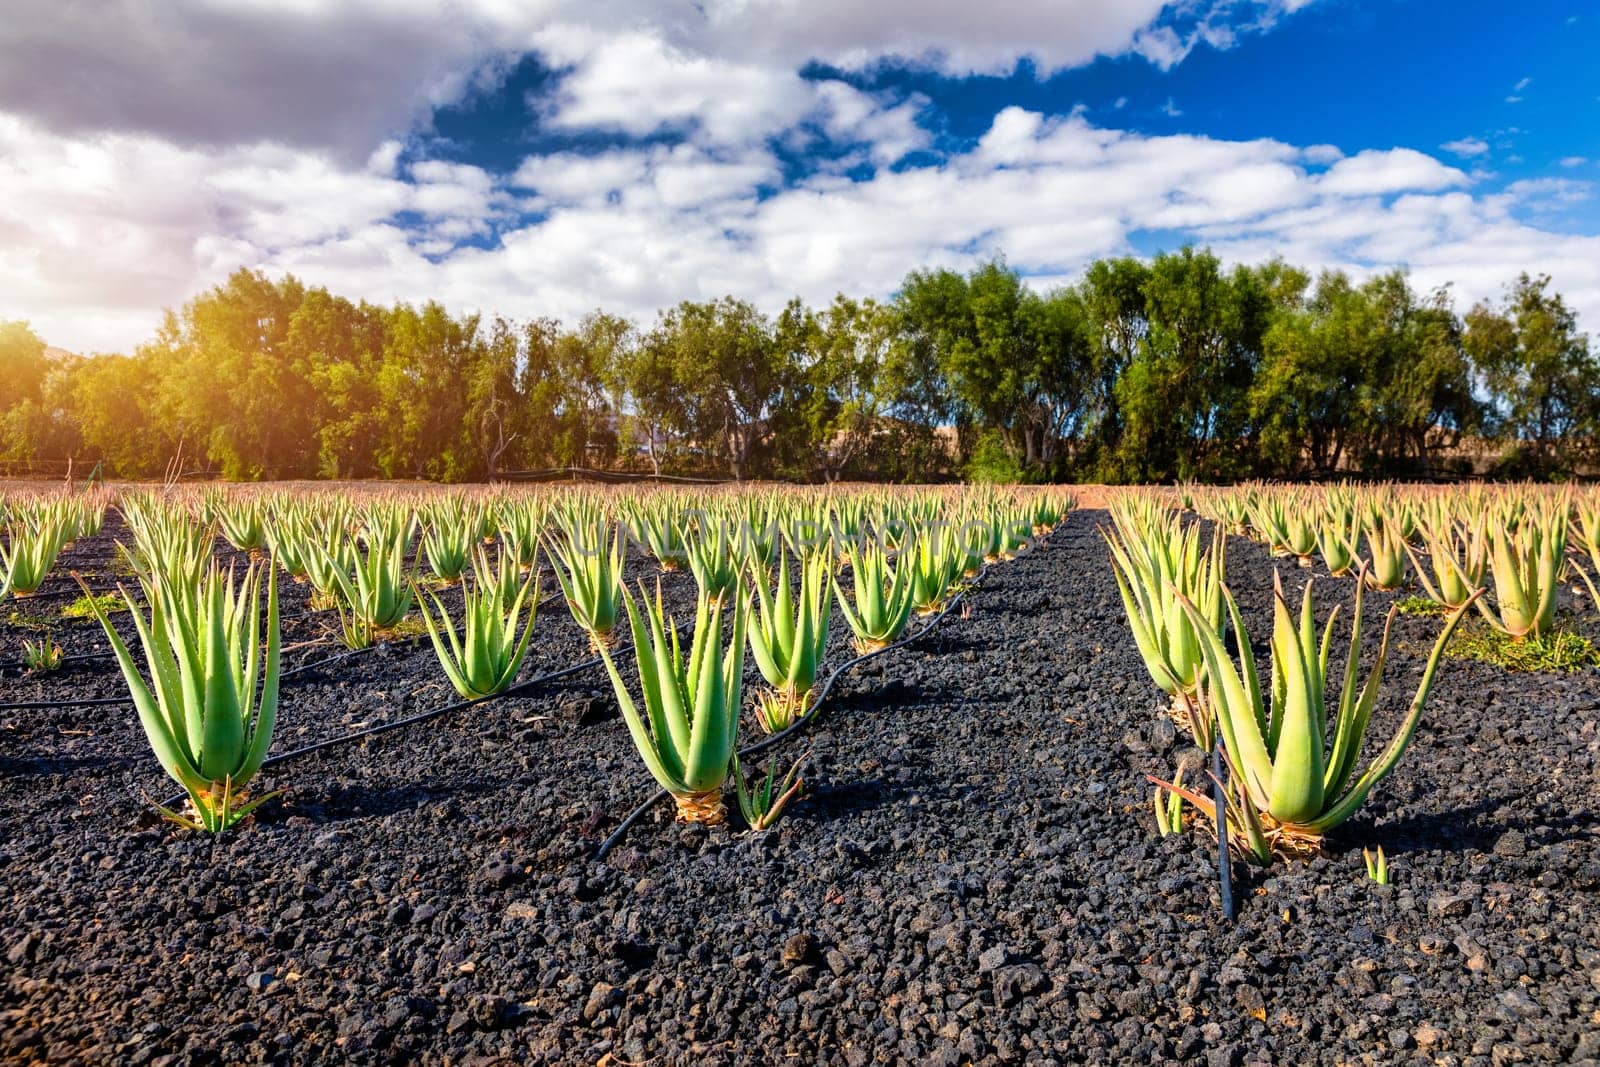 Aloe vera plant. Aloe vera plantation. Fuerteventura, Canary Islands, Spain. Aloe Vera growing on the Island of Fuerteventura in the Canary Islands, Spain. Aloe vera plantation in the Canary Islands. by DaLiu